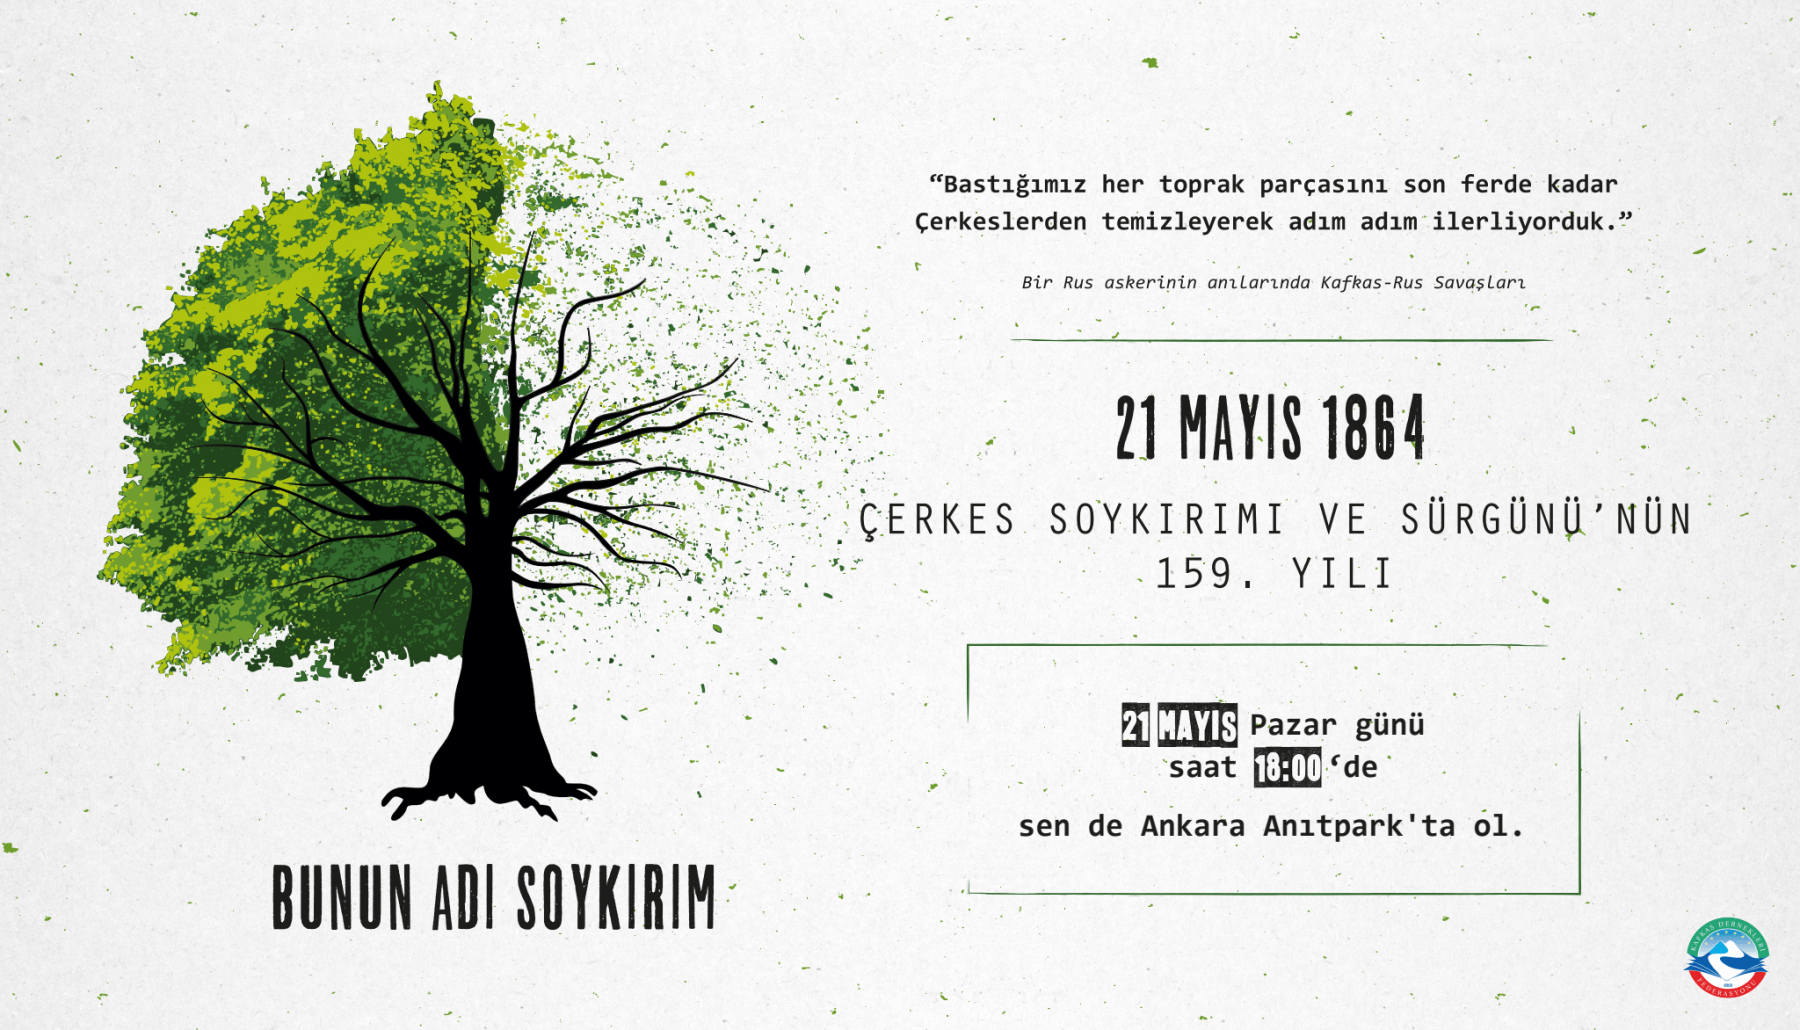 Çerkes Soykırımı ve Sürgünü'nün 159. Yılı'nda Ankara Anıtpark'tayız